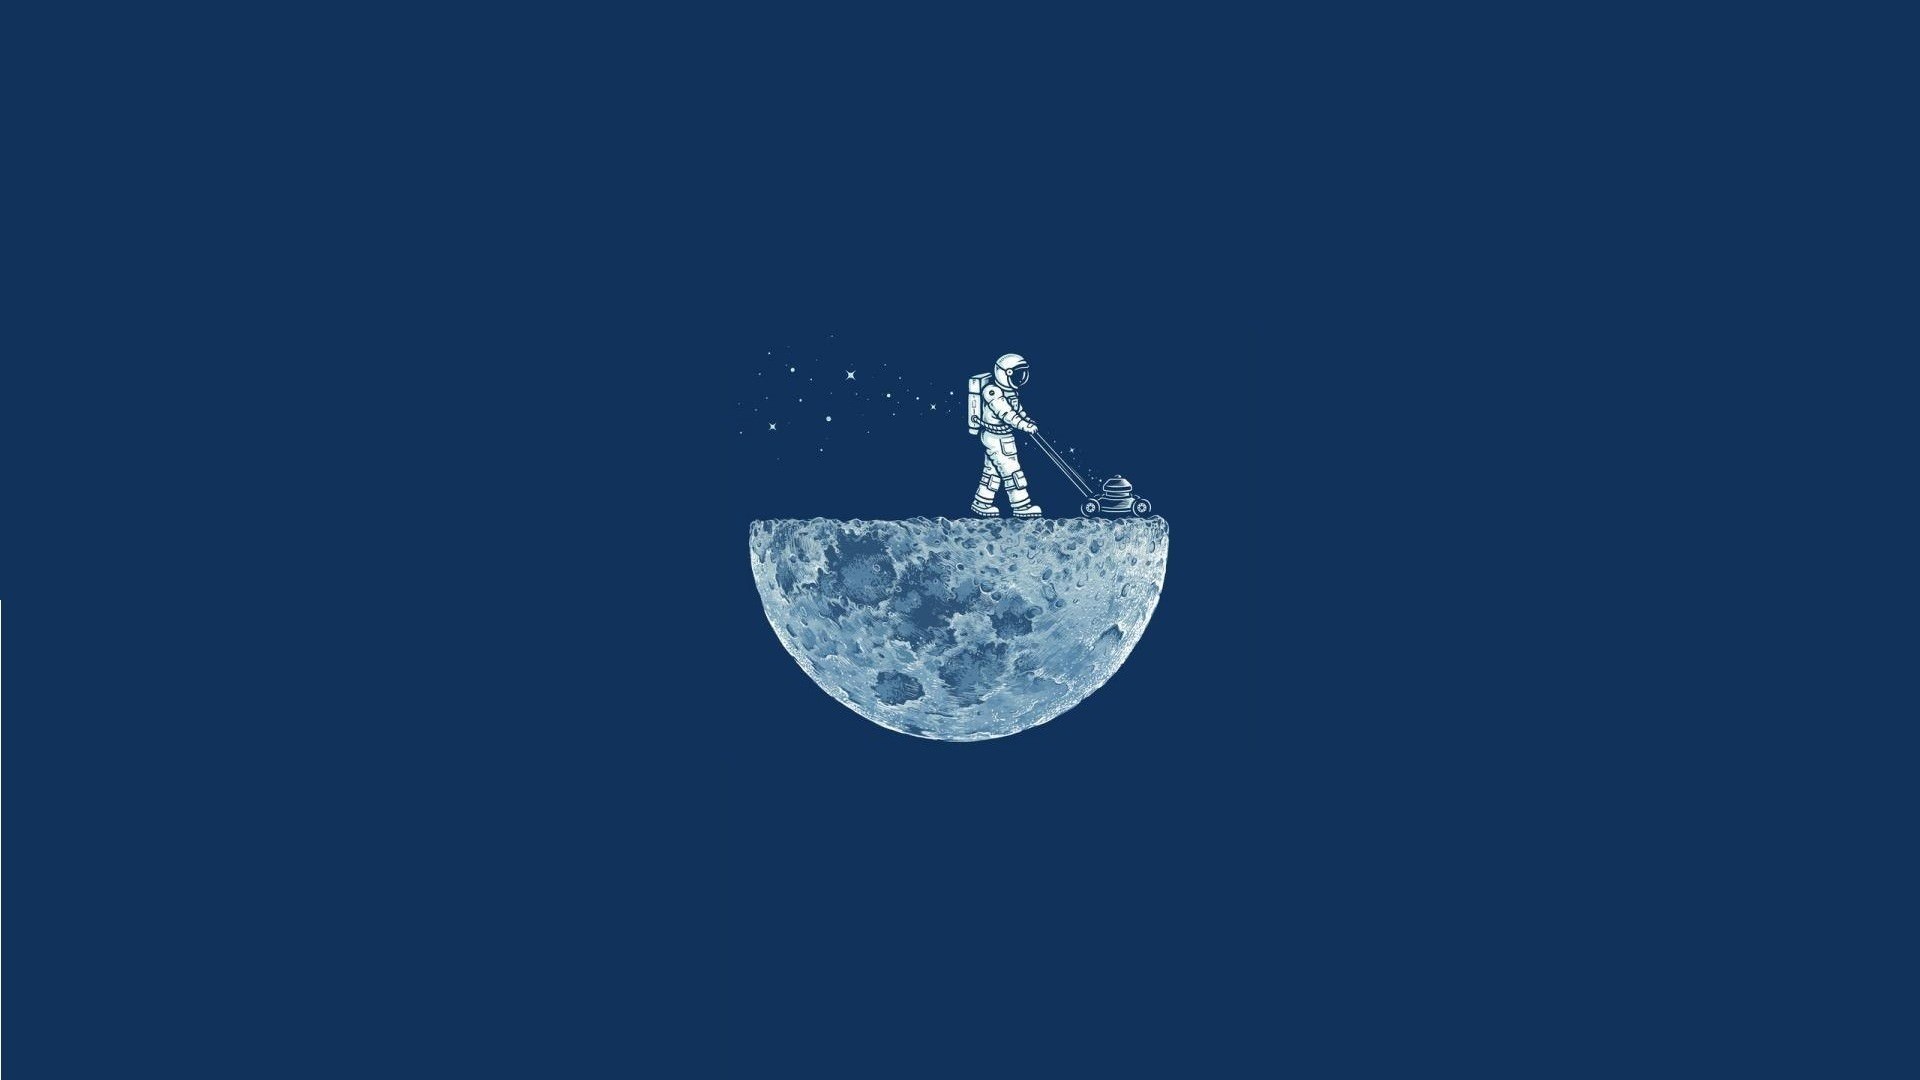 Digitalart Io Moon Astronauts Illustration Wallpaper